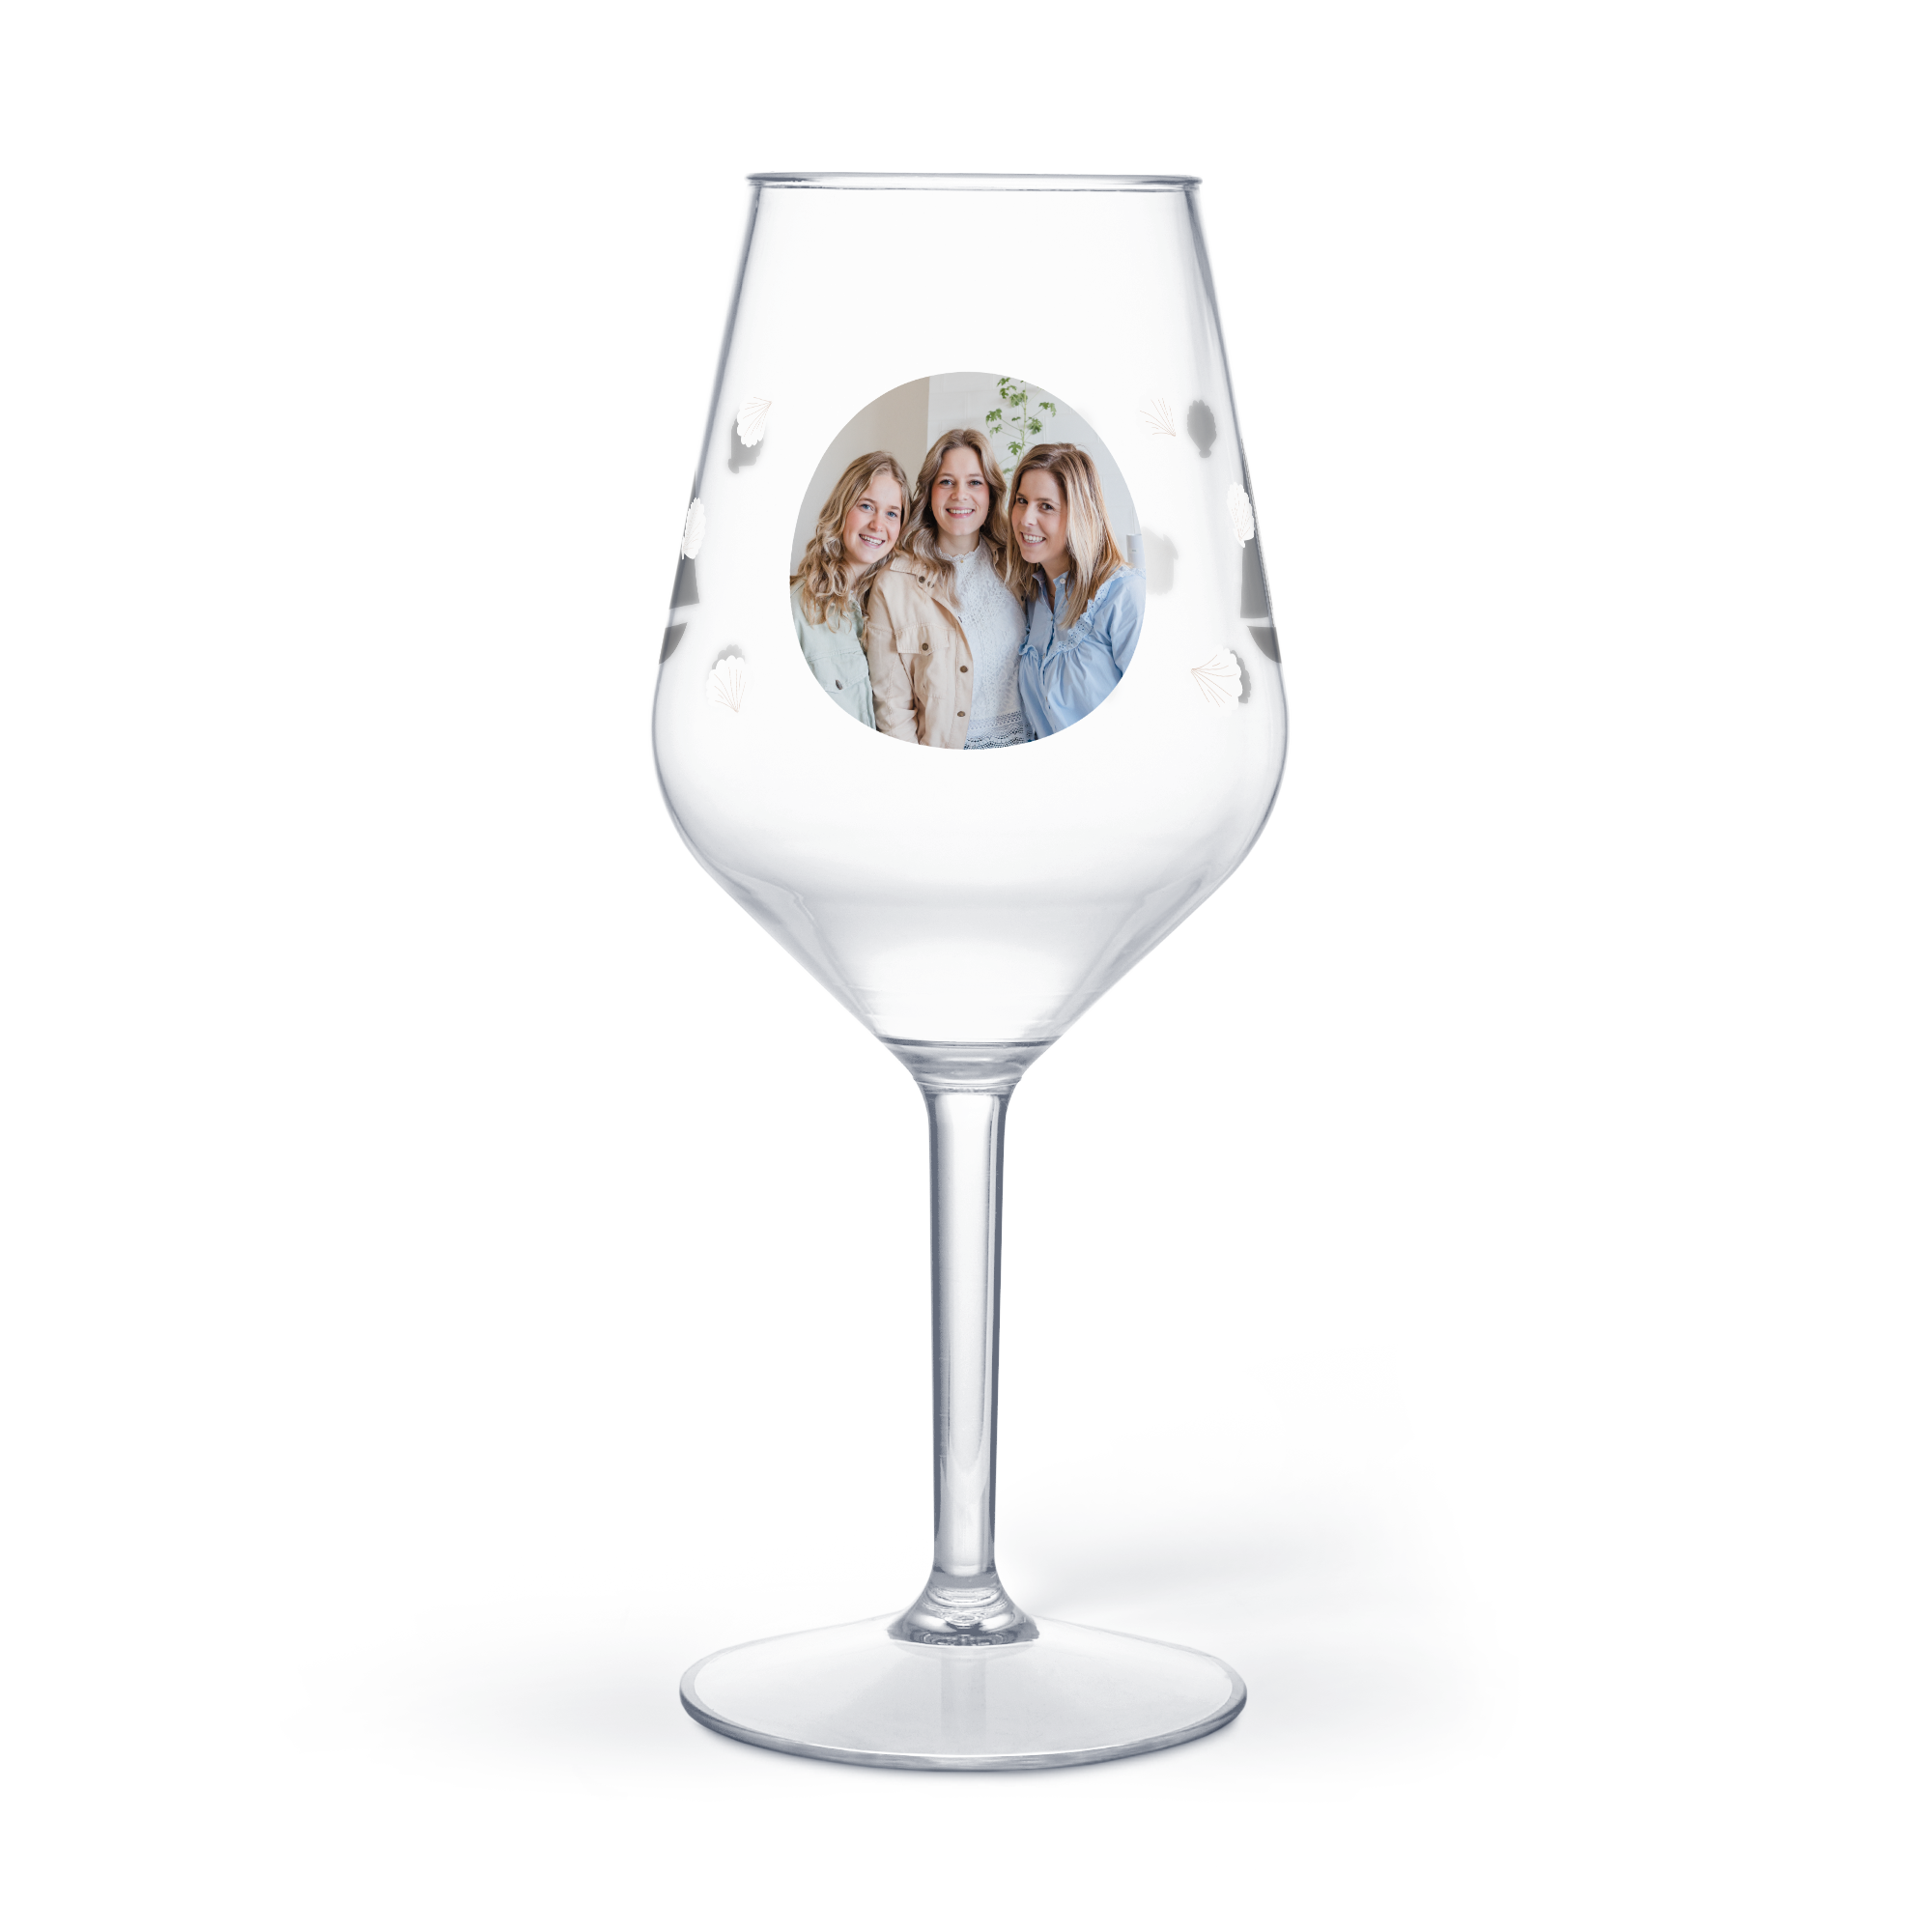 Kunststof wijnglas